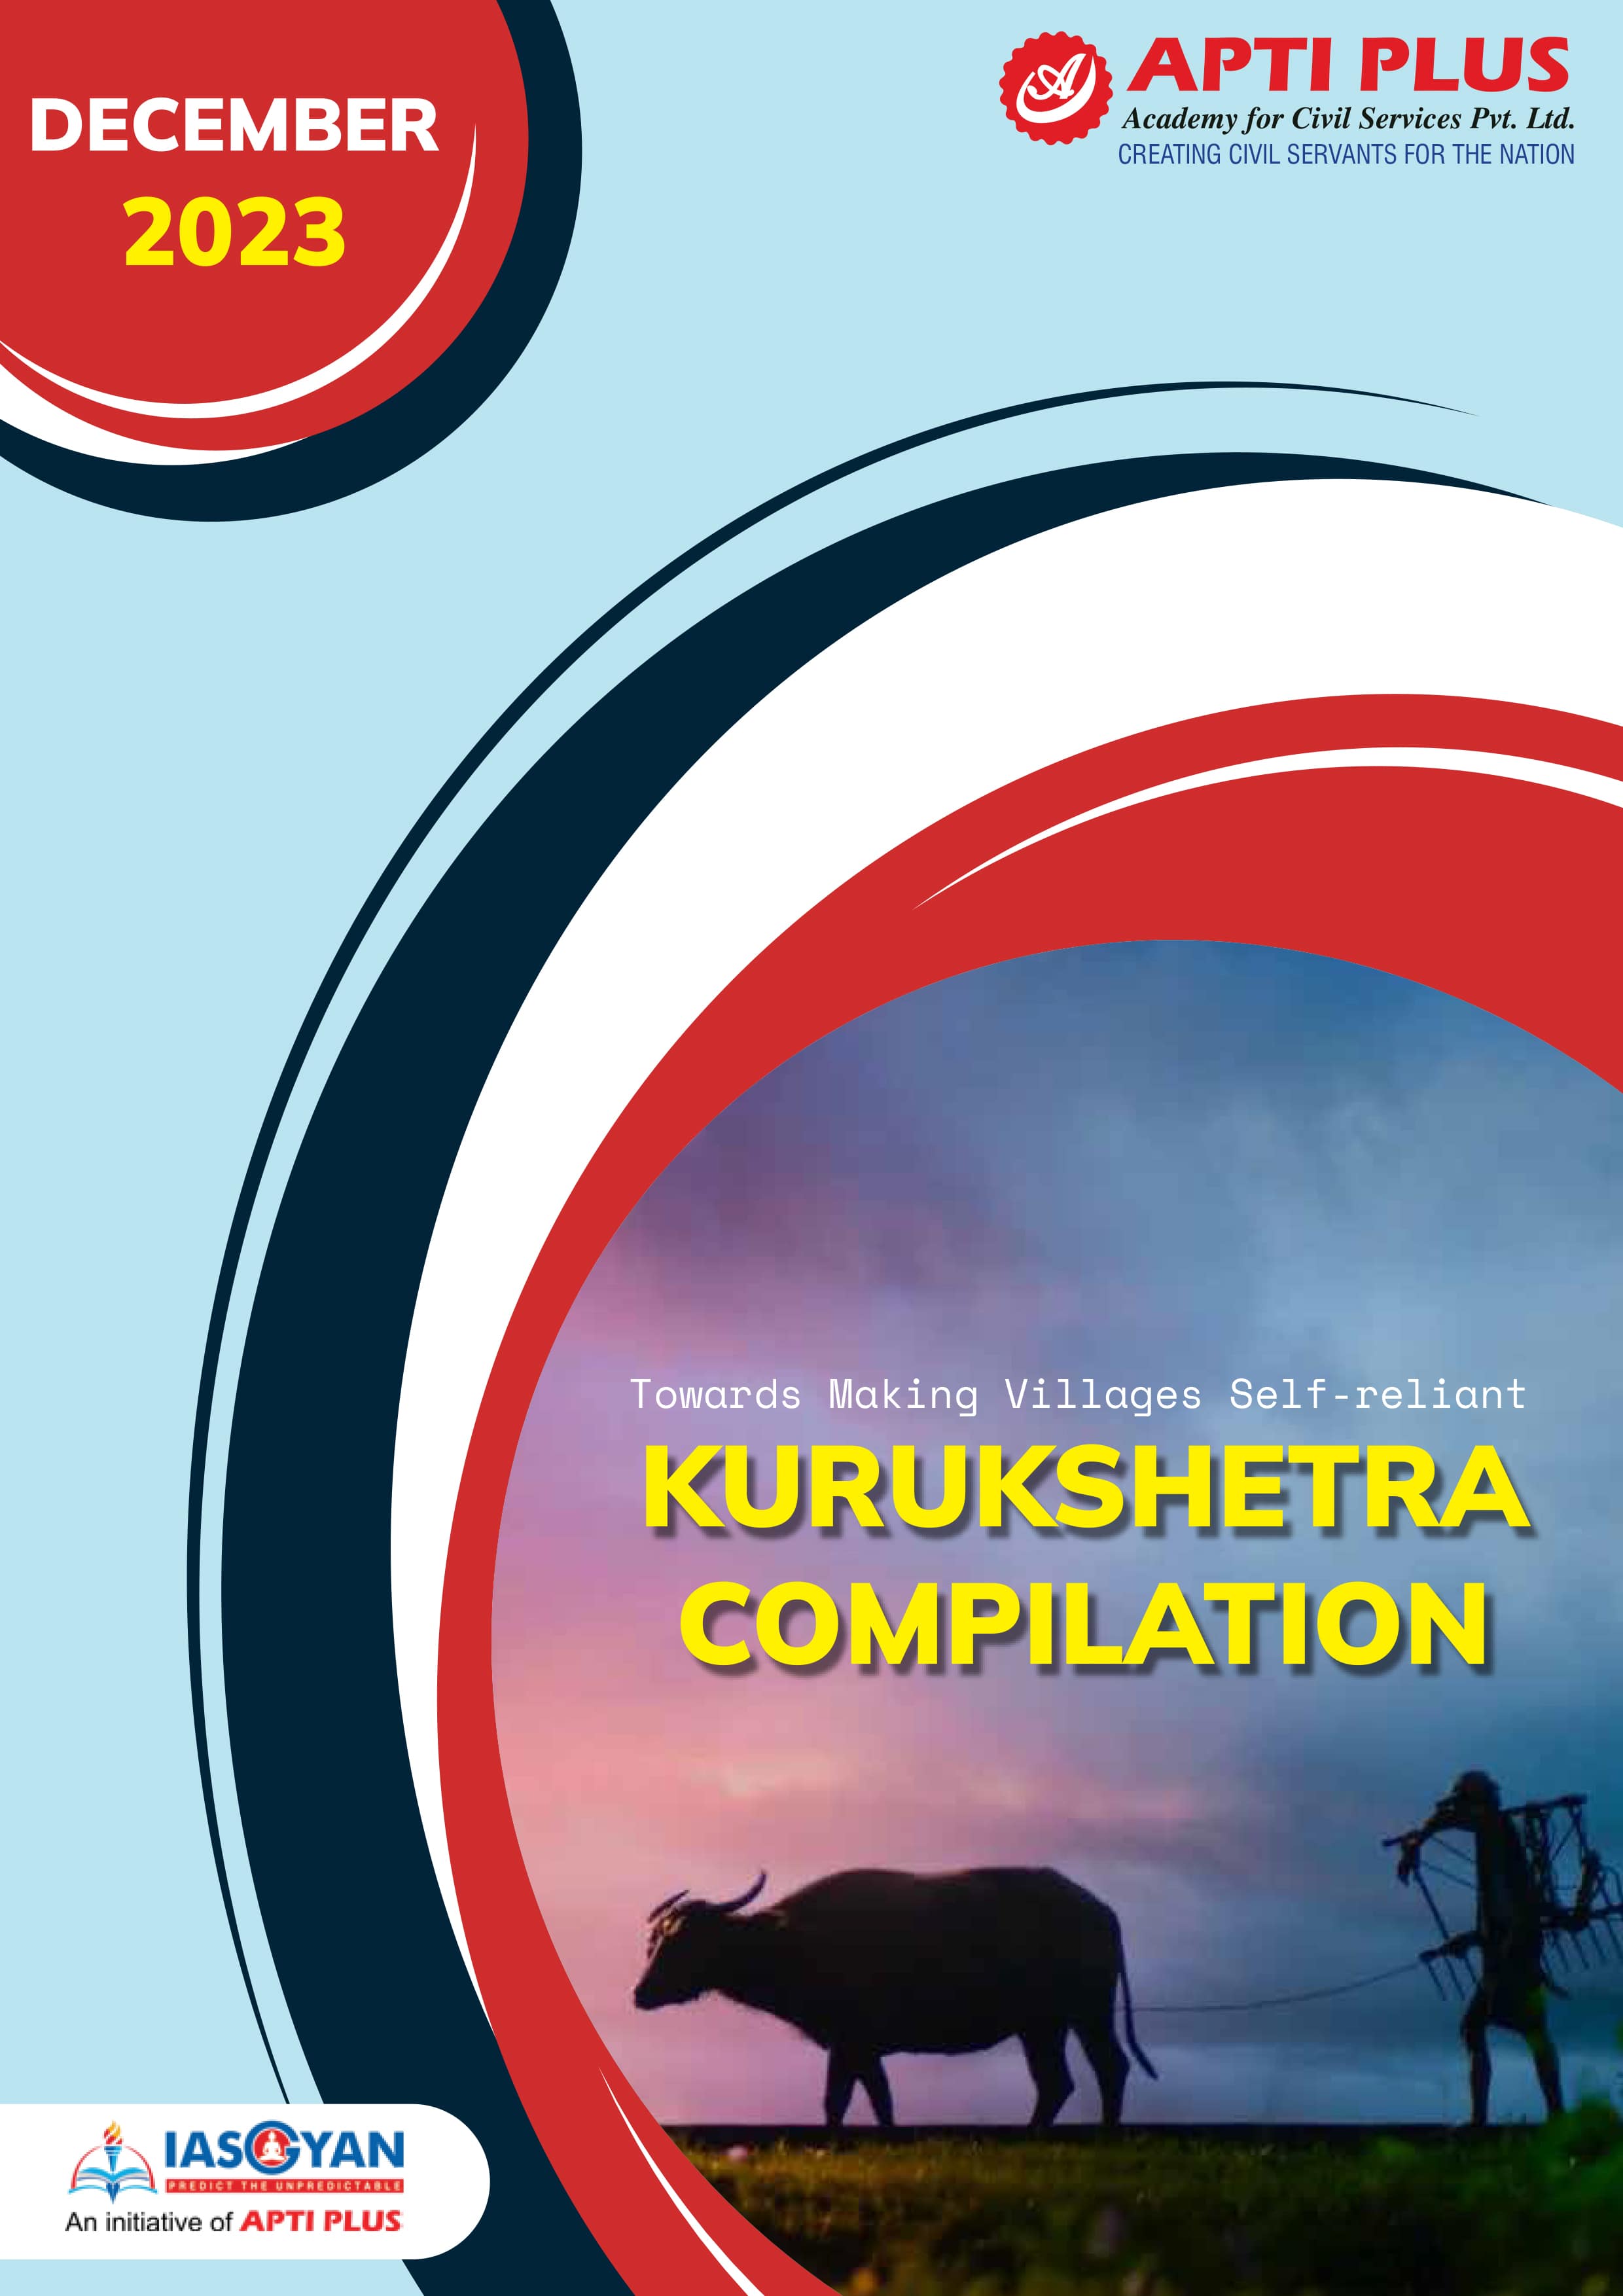 KURUKSHETRA COMPILATION DECEMBER 2023